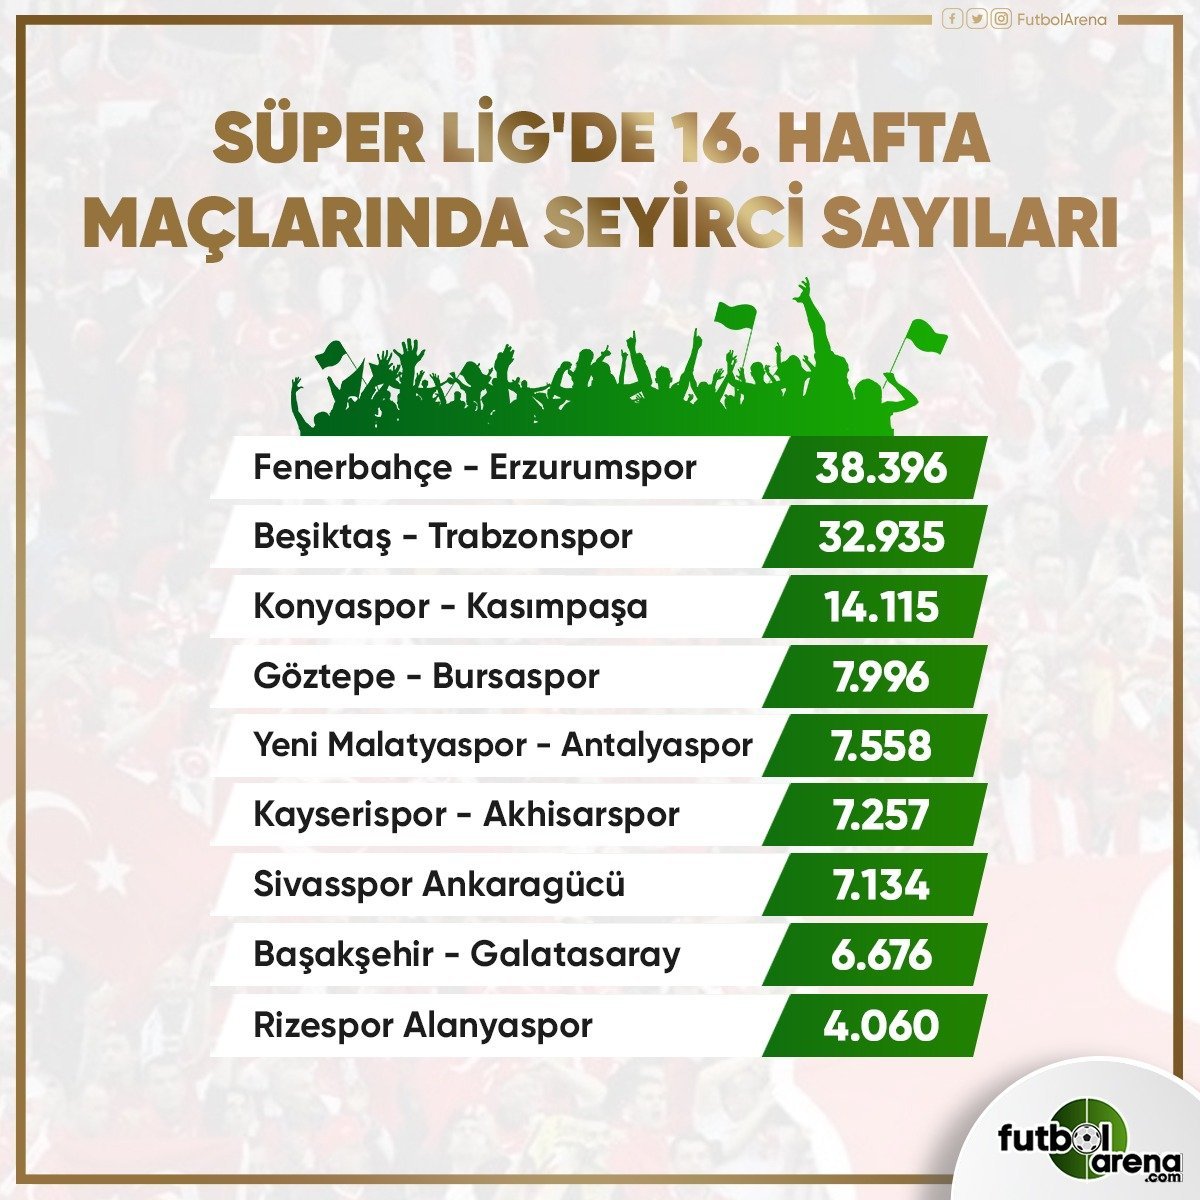 <h2>Süper Lig’de haftalara göre maçların seyirci sayıları</h2>